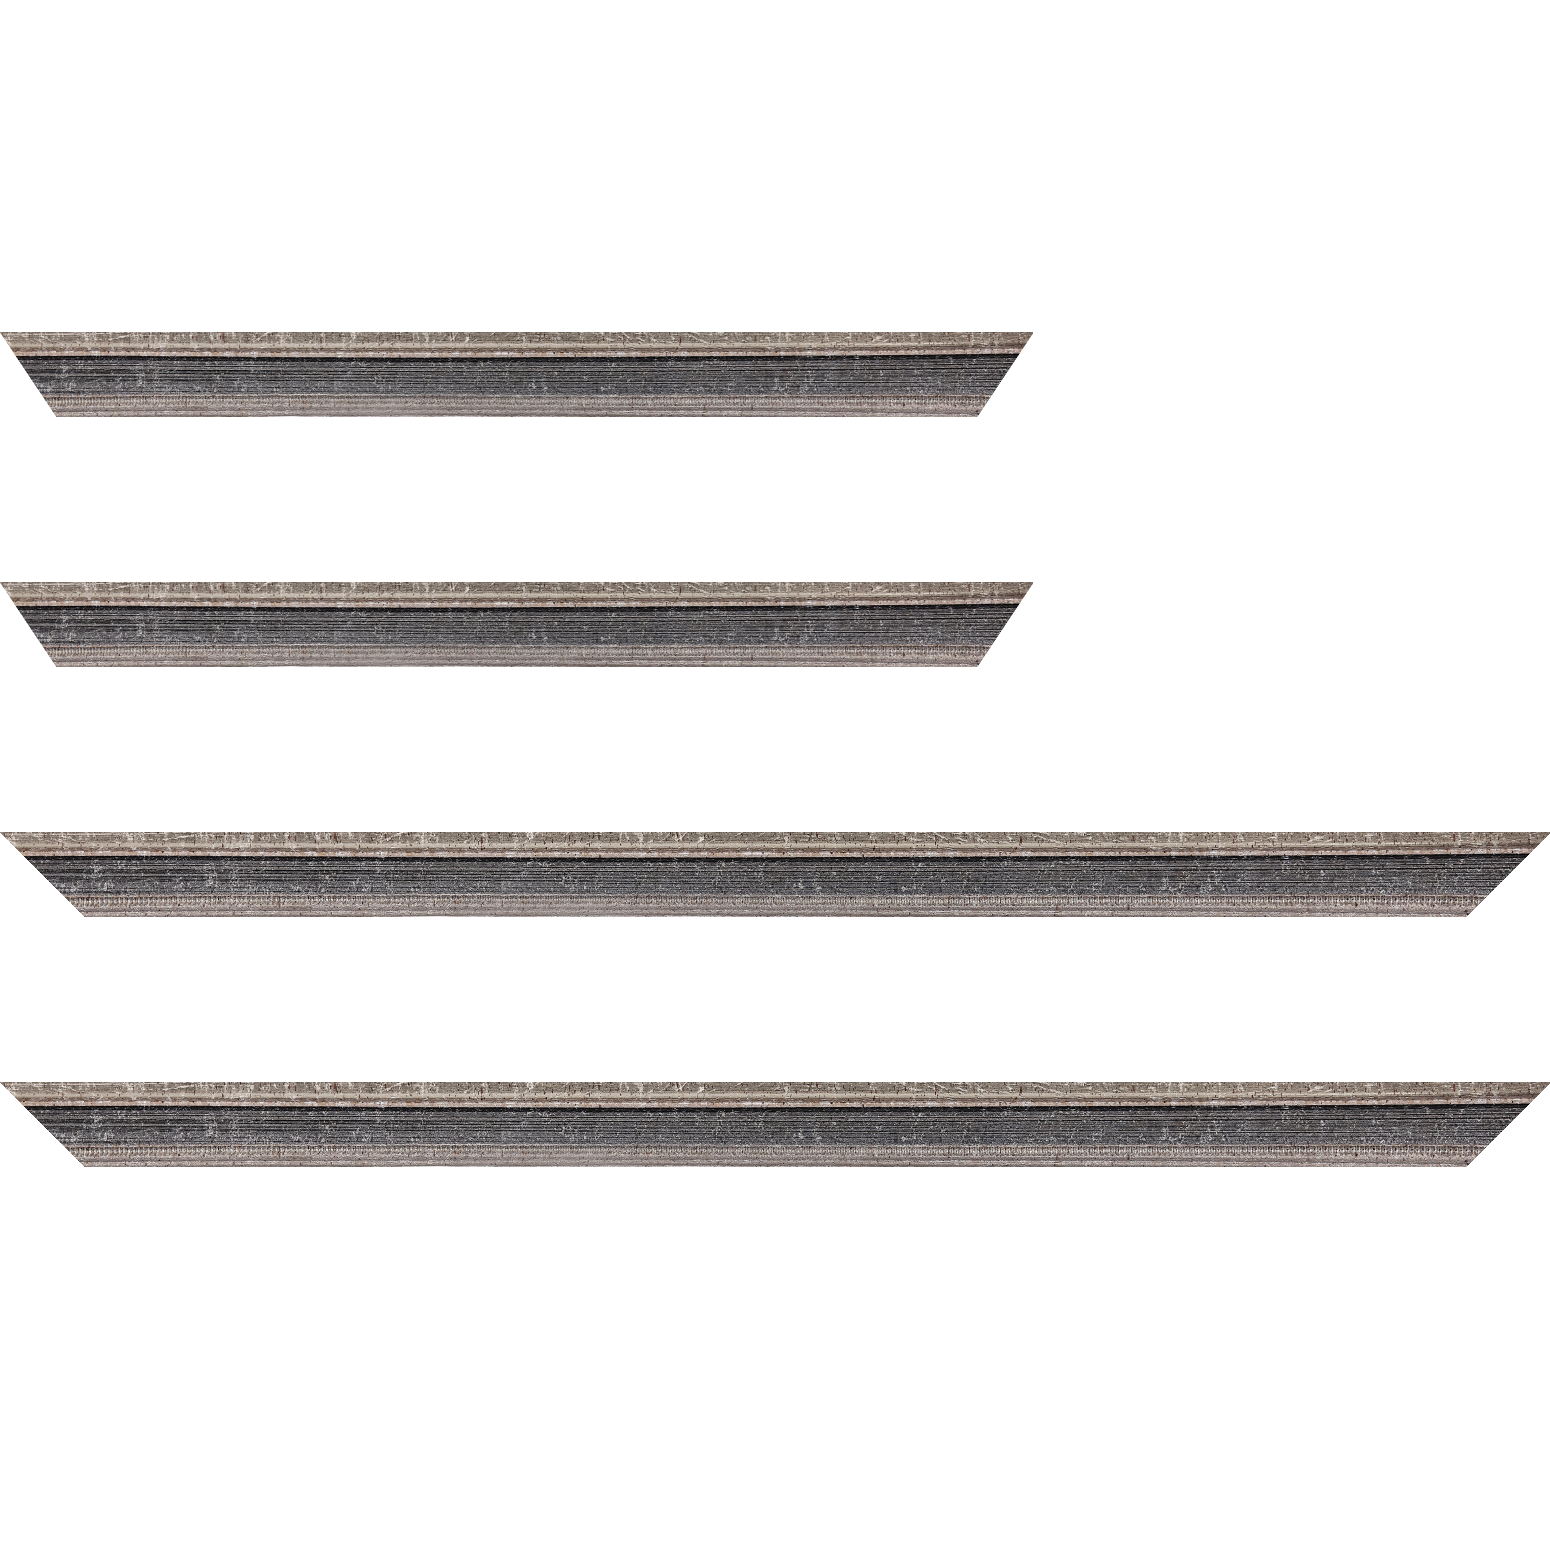 Baguette bois profil incurvé largeur 2.4cm argent antique gorge gris noirci vieilli filet perle argent - 70x100